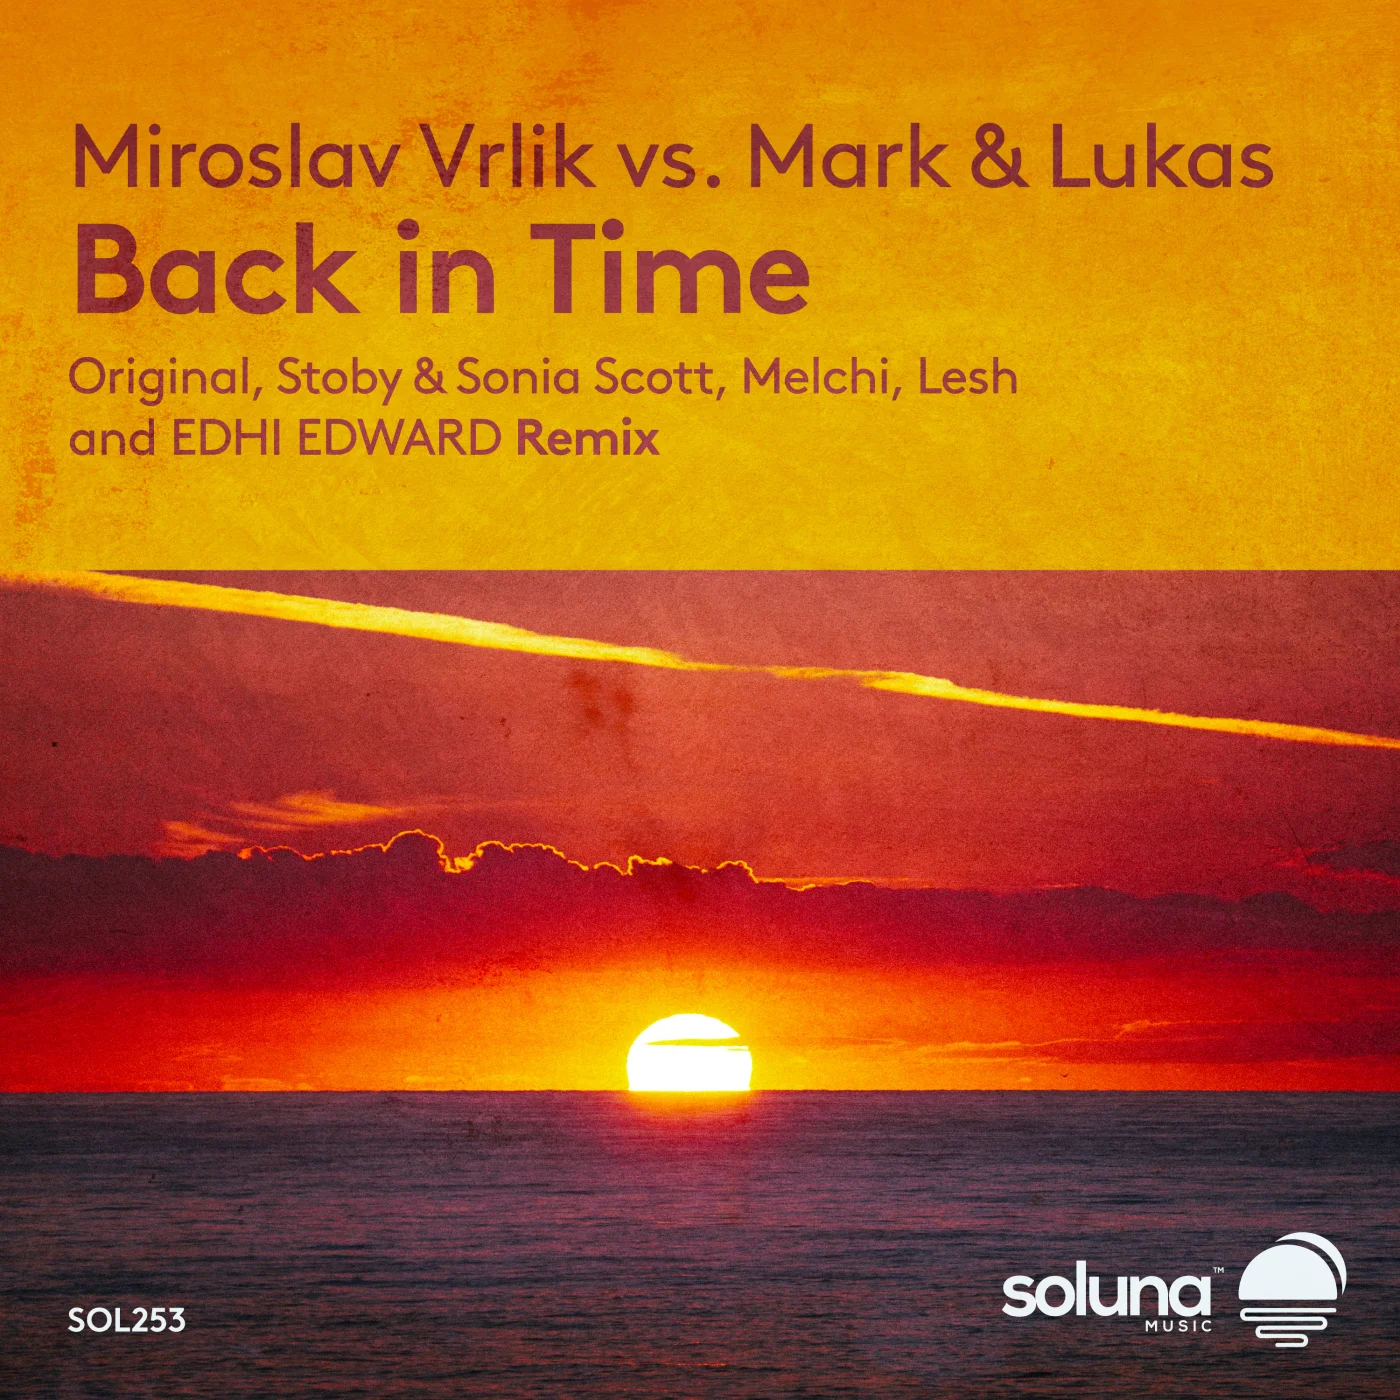 Miroslav Vrlik Vs. Mark & Lukas - Back In Time (Stoby & Sonia Scott Remix)